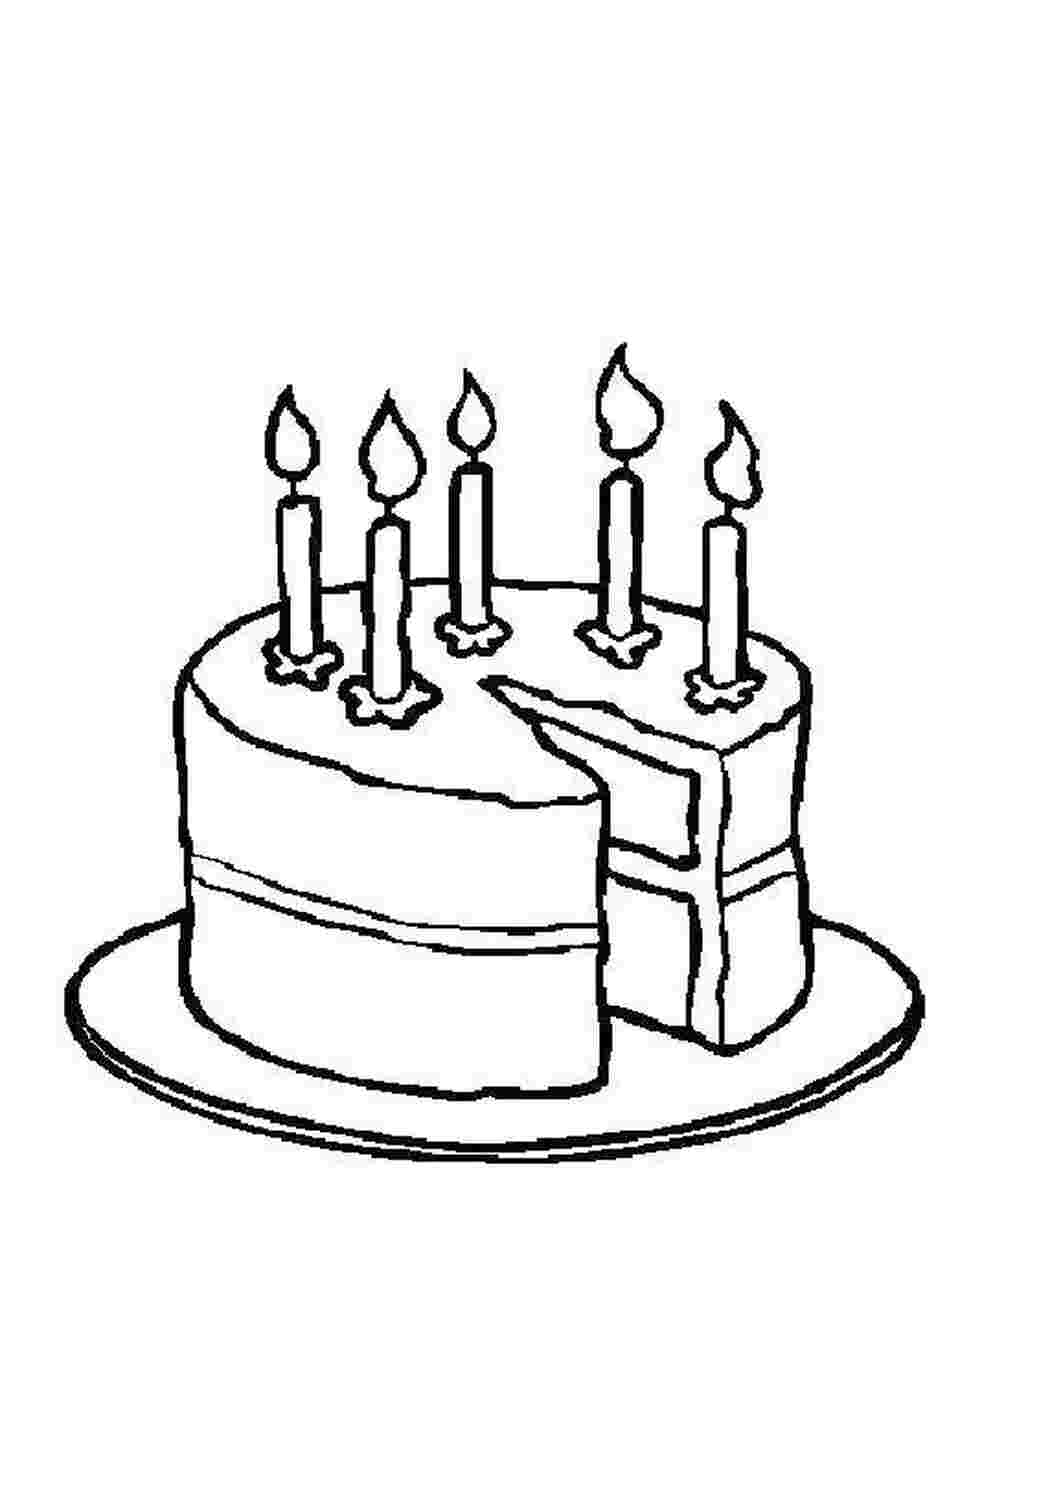 Рисунок торта на день рождения карандашом